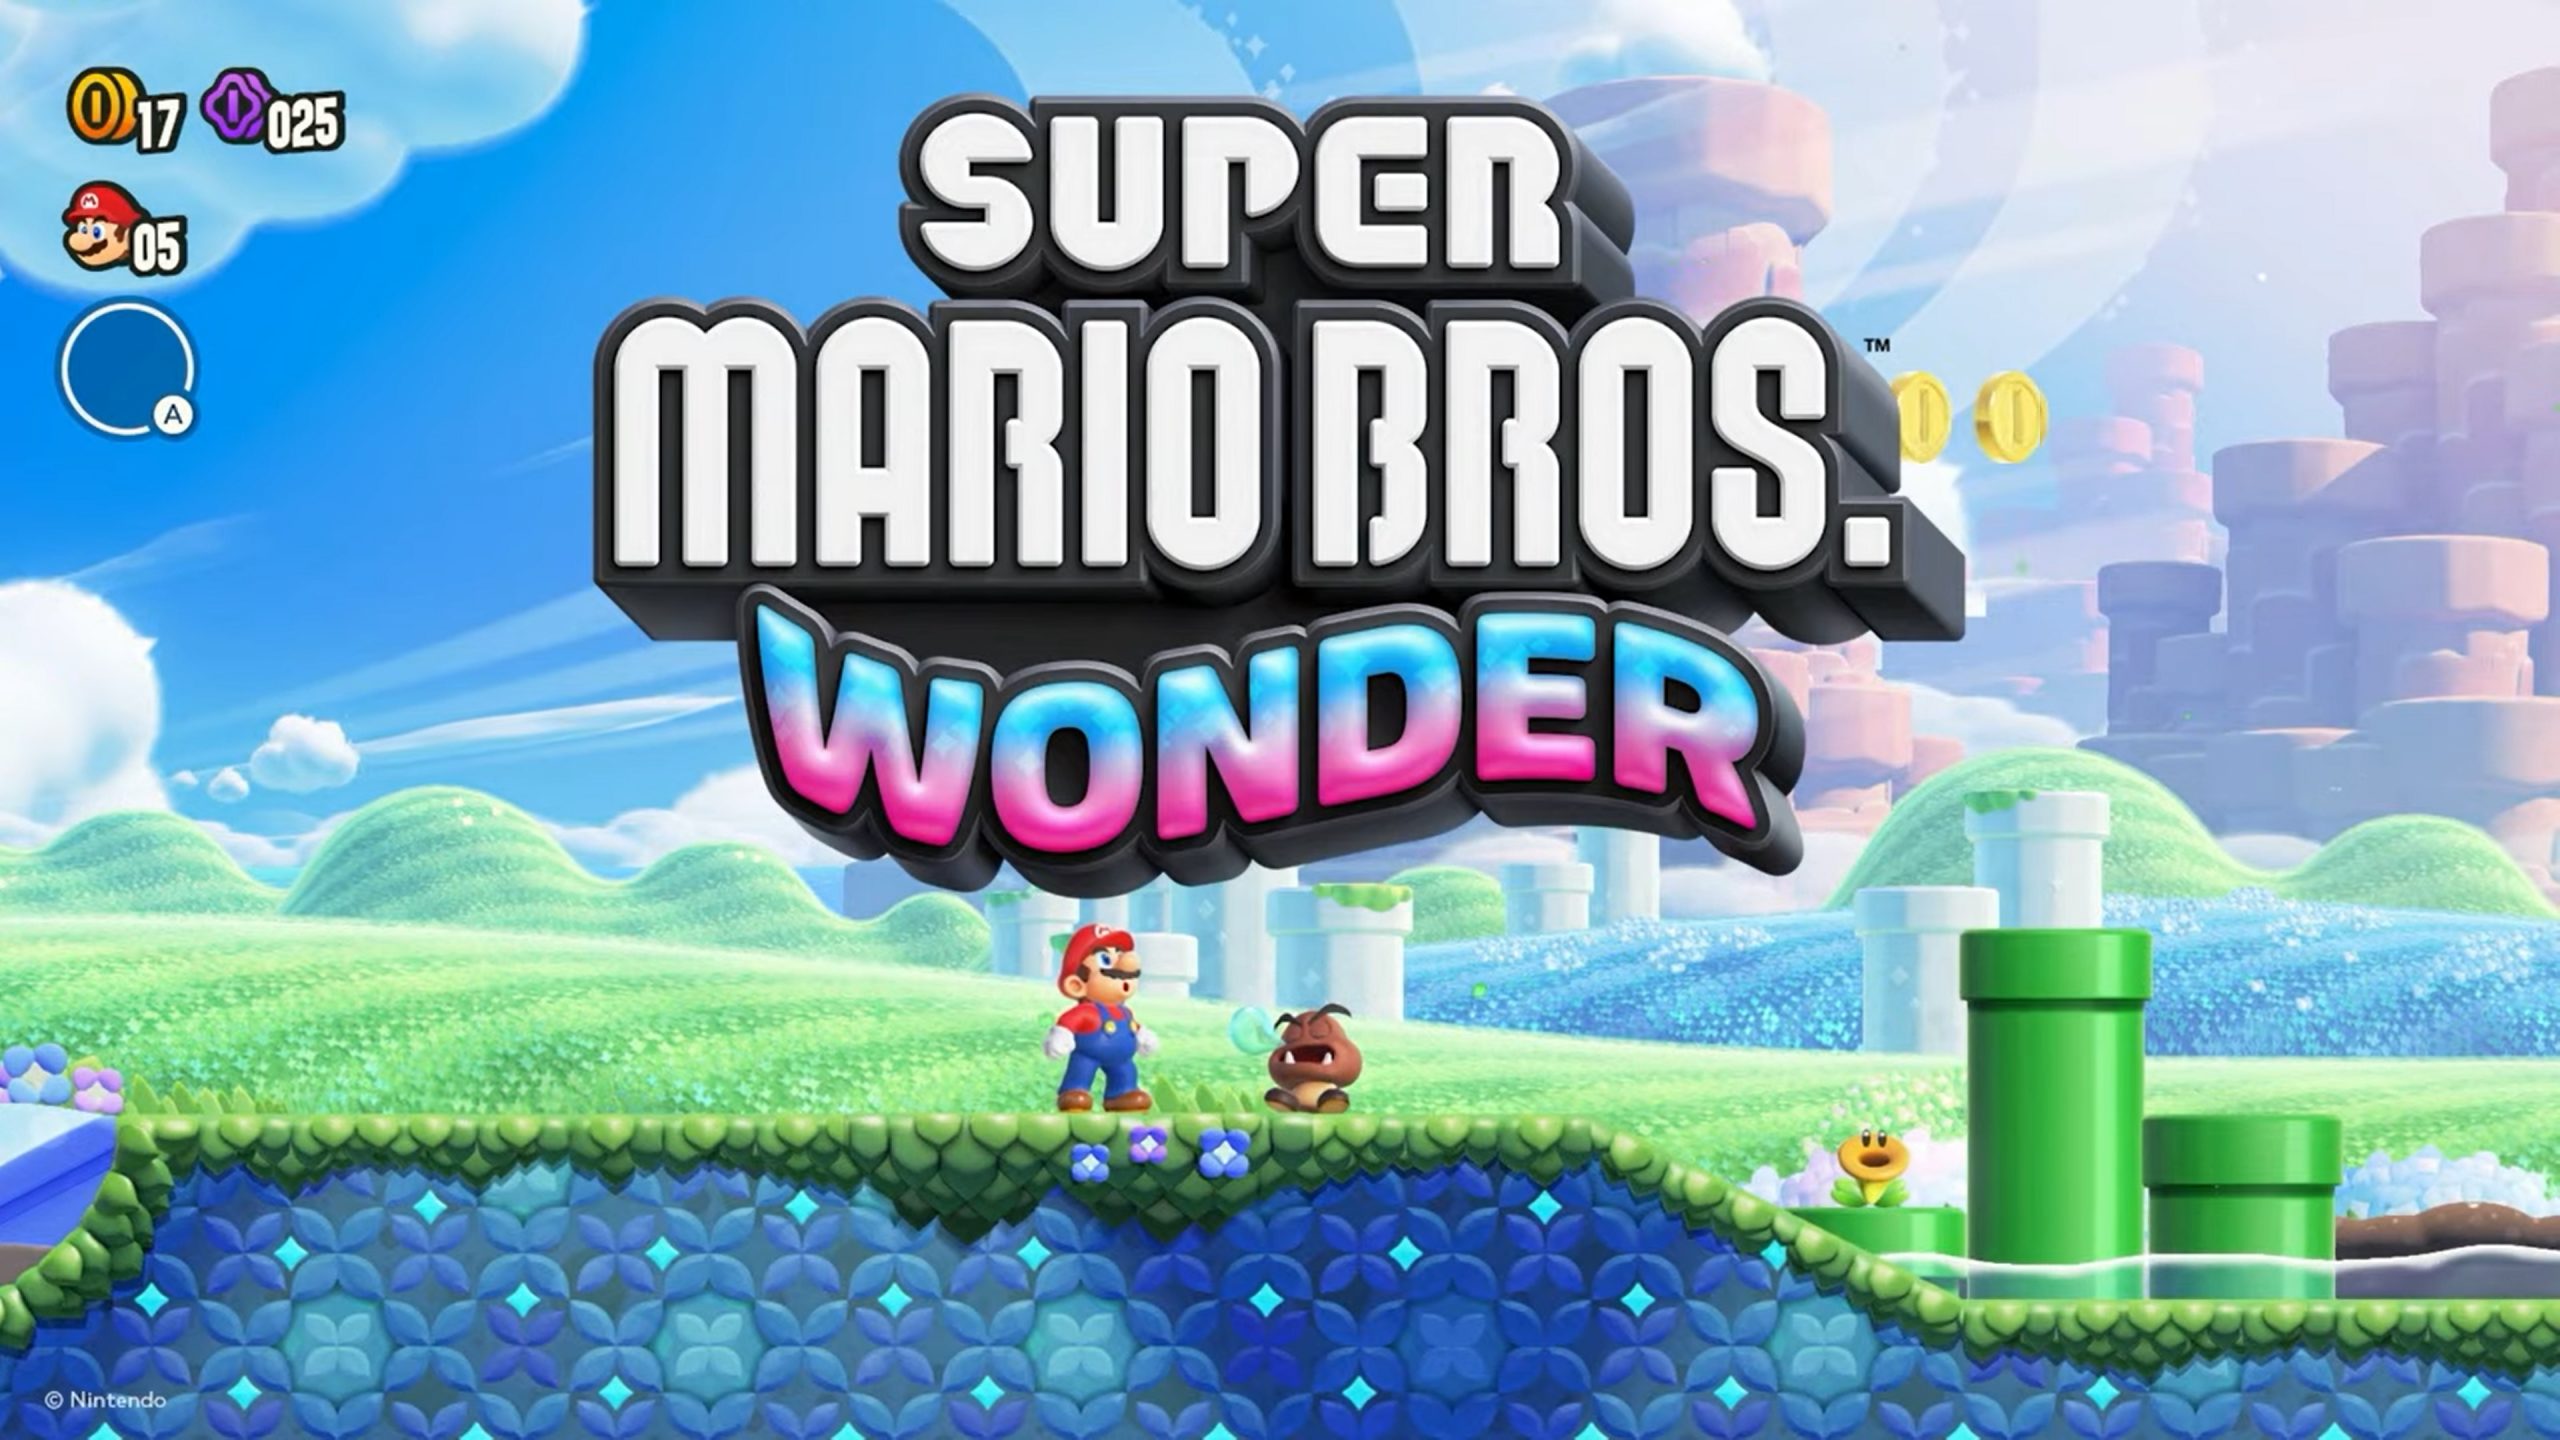 El número de copias físicas de Super Mario Bros. Wonder vendidas en Japón ascendió a más de 638.000. El juego ocupó el primer puesto en las listas